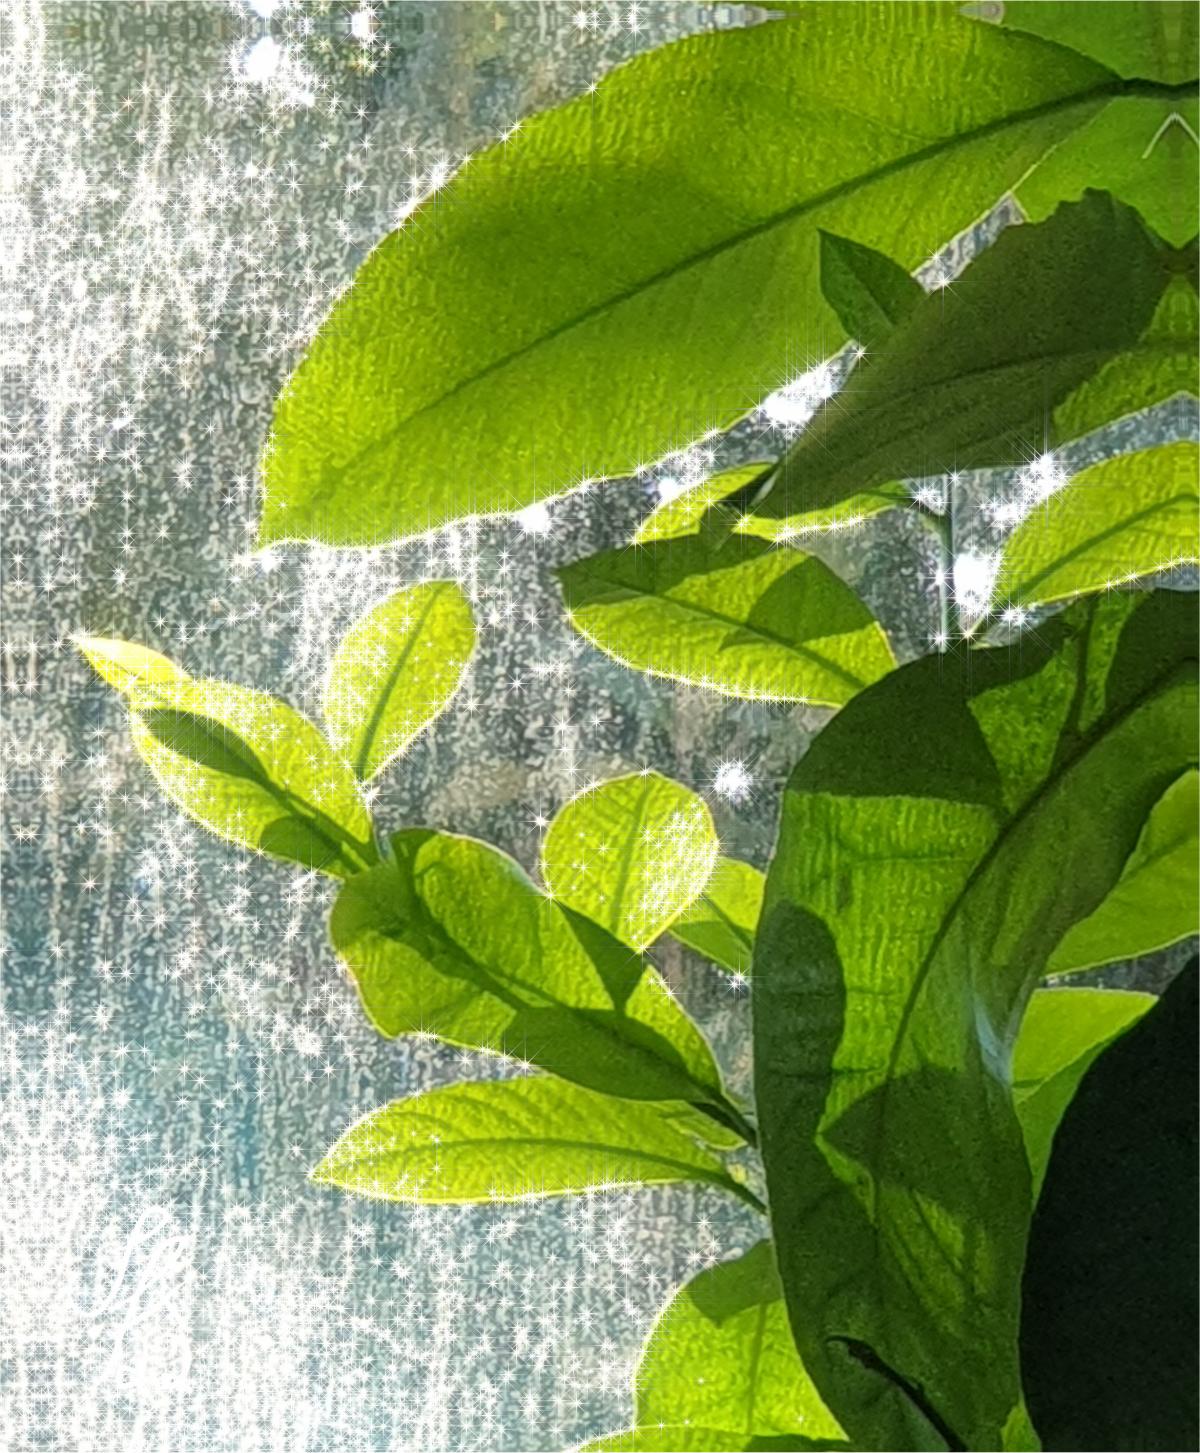 Lemon tree leaves against a sunny window